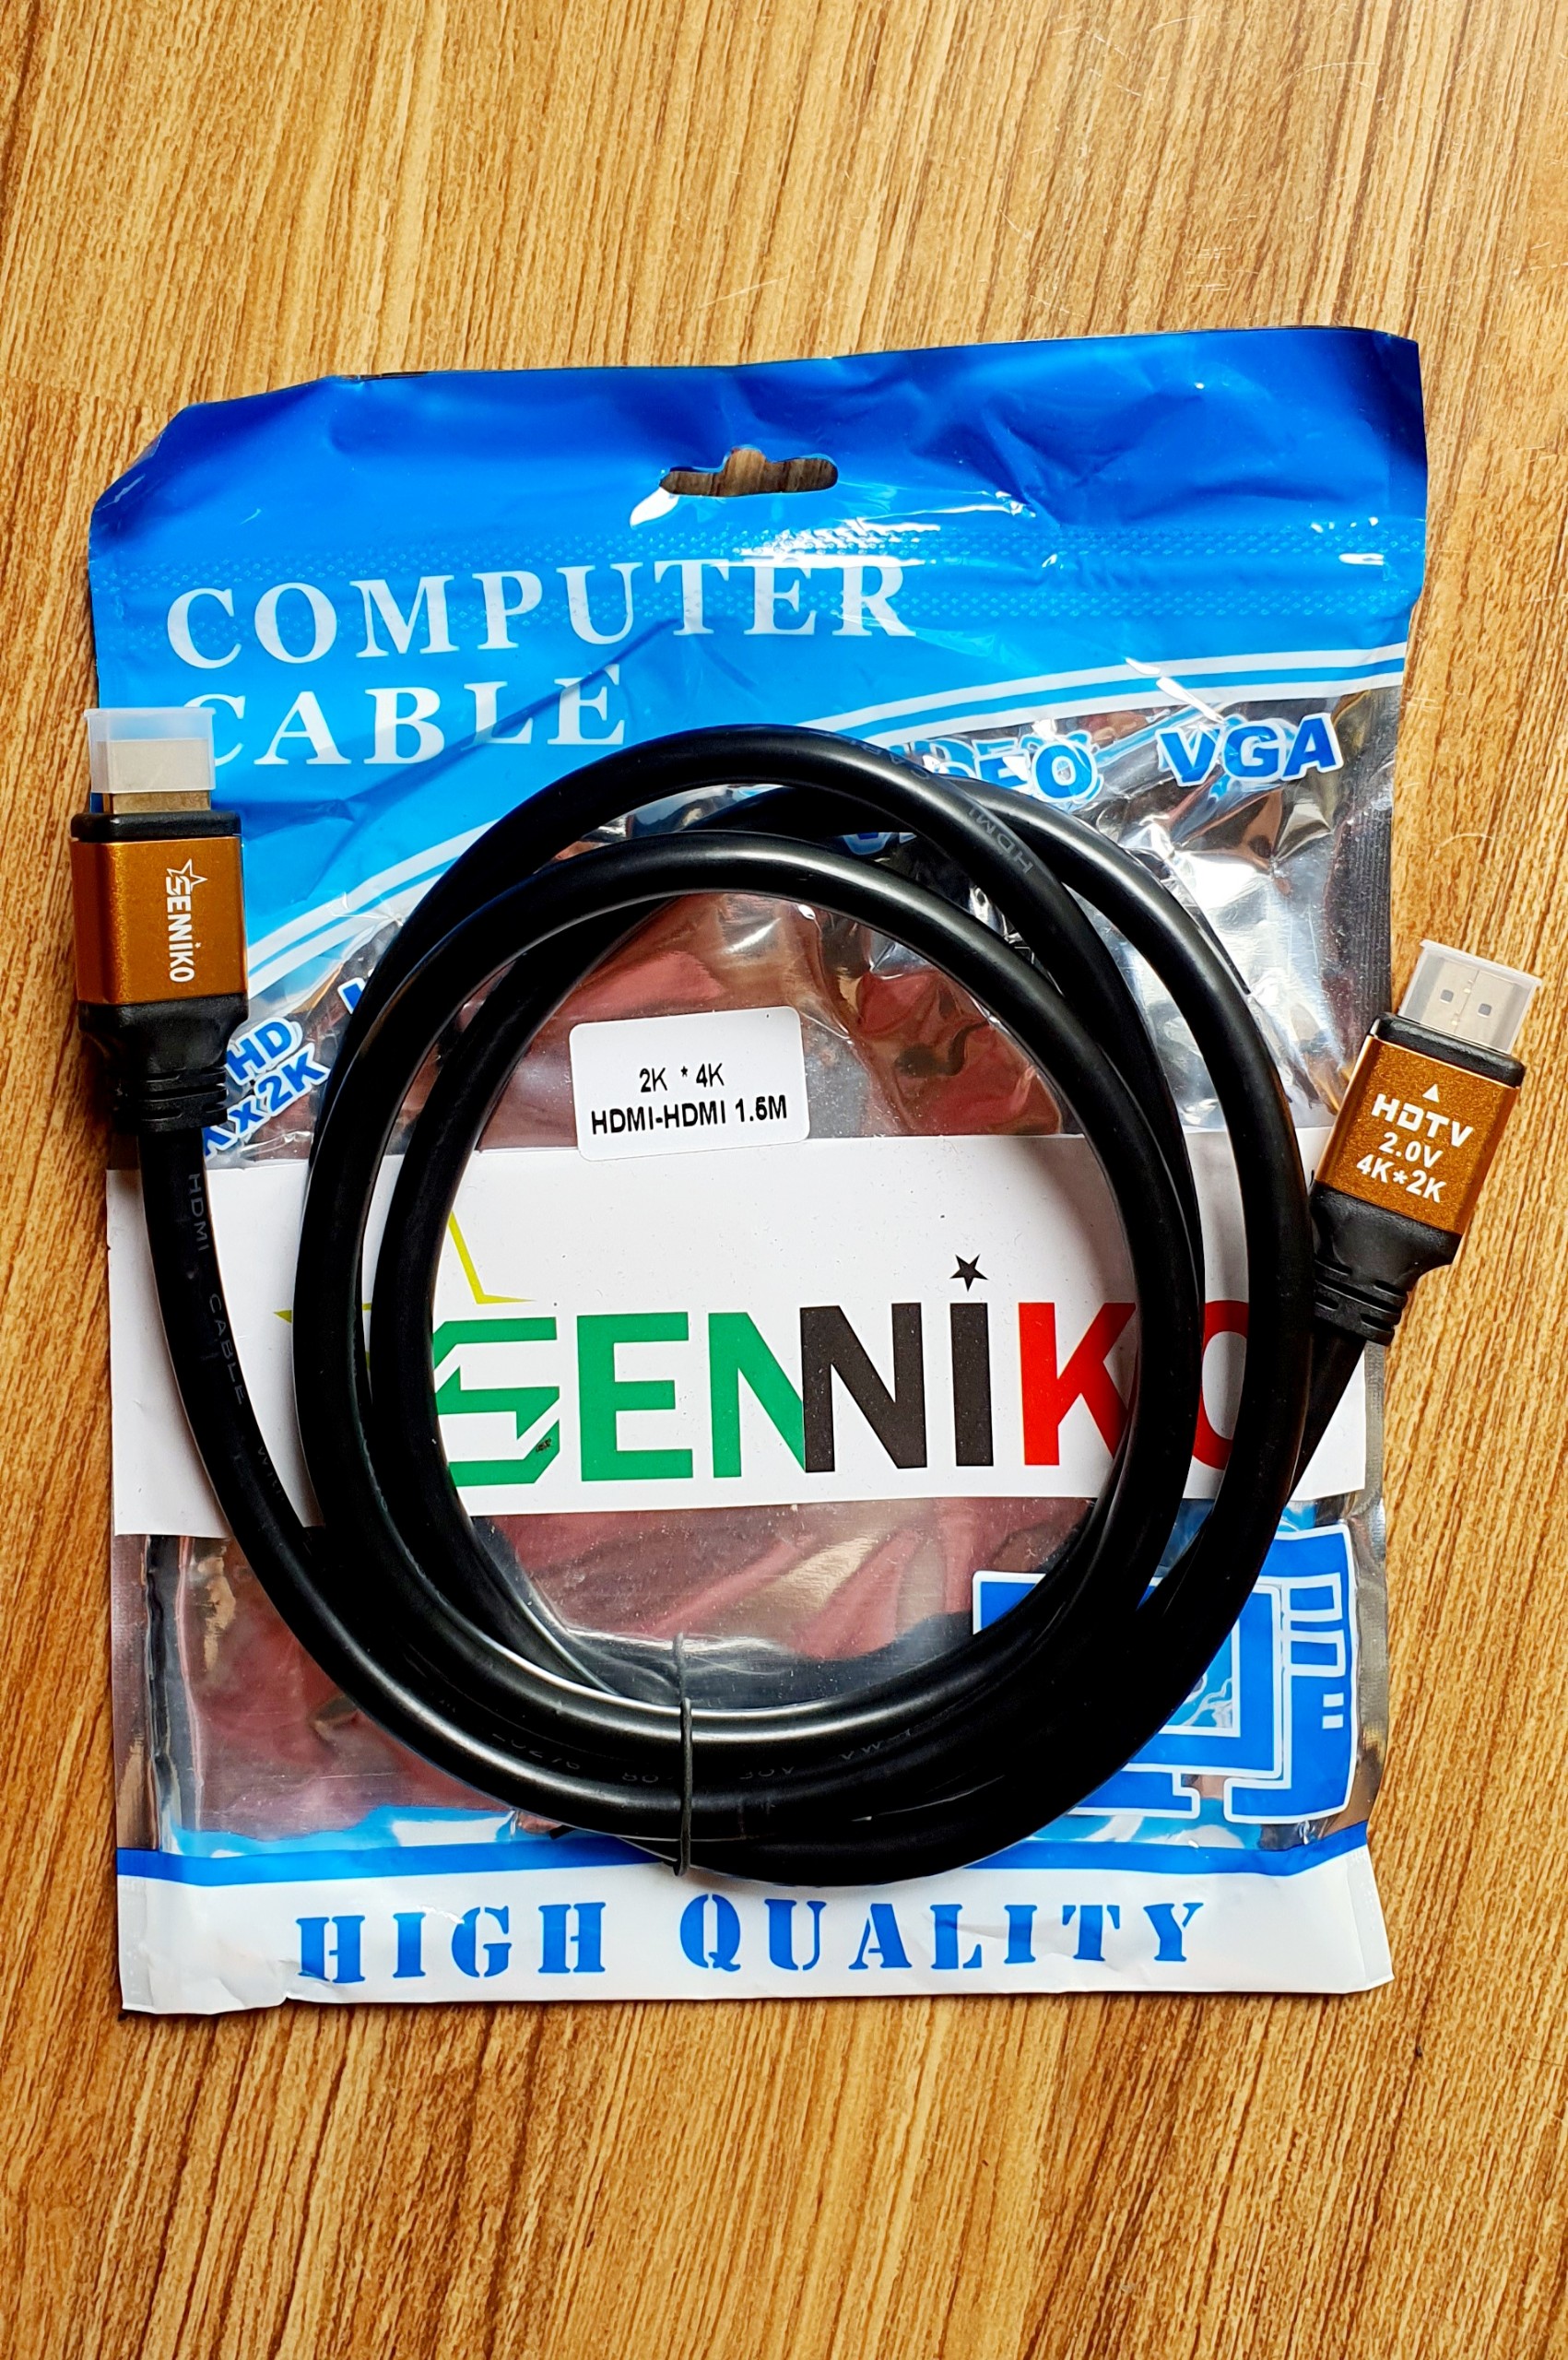 Cáp HDMI 1.5M SENNIKO 4K - Hàng Nhập Khẩu